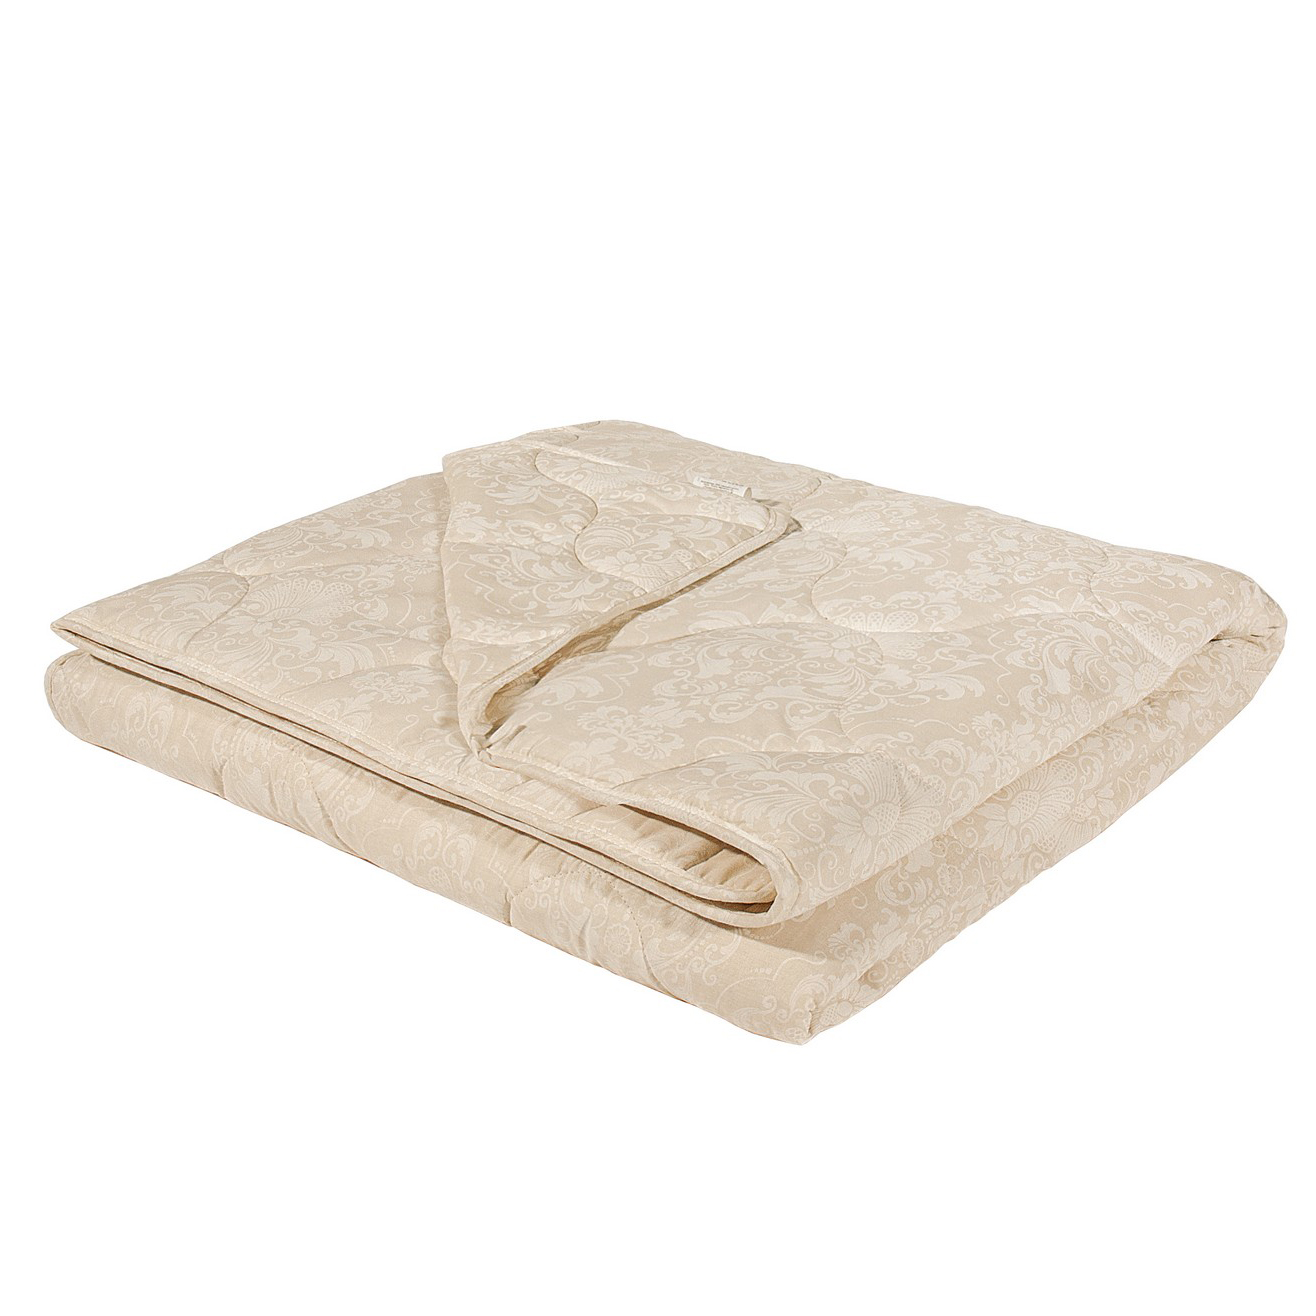 Одеяло Лёгкое Shawna (200х220 см), размер 200х220 см ree599520 Одеяло Лёгкое Shawna (200х220 см) - фото 1